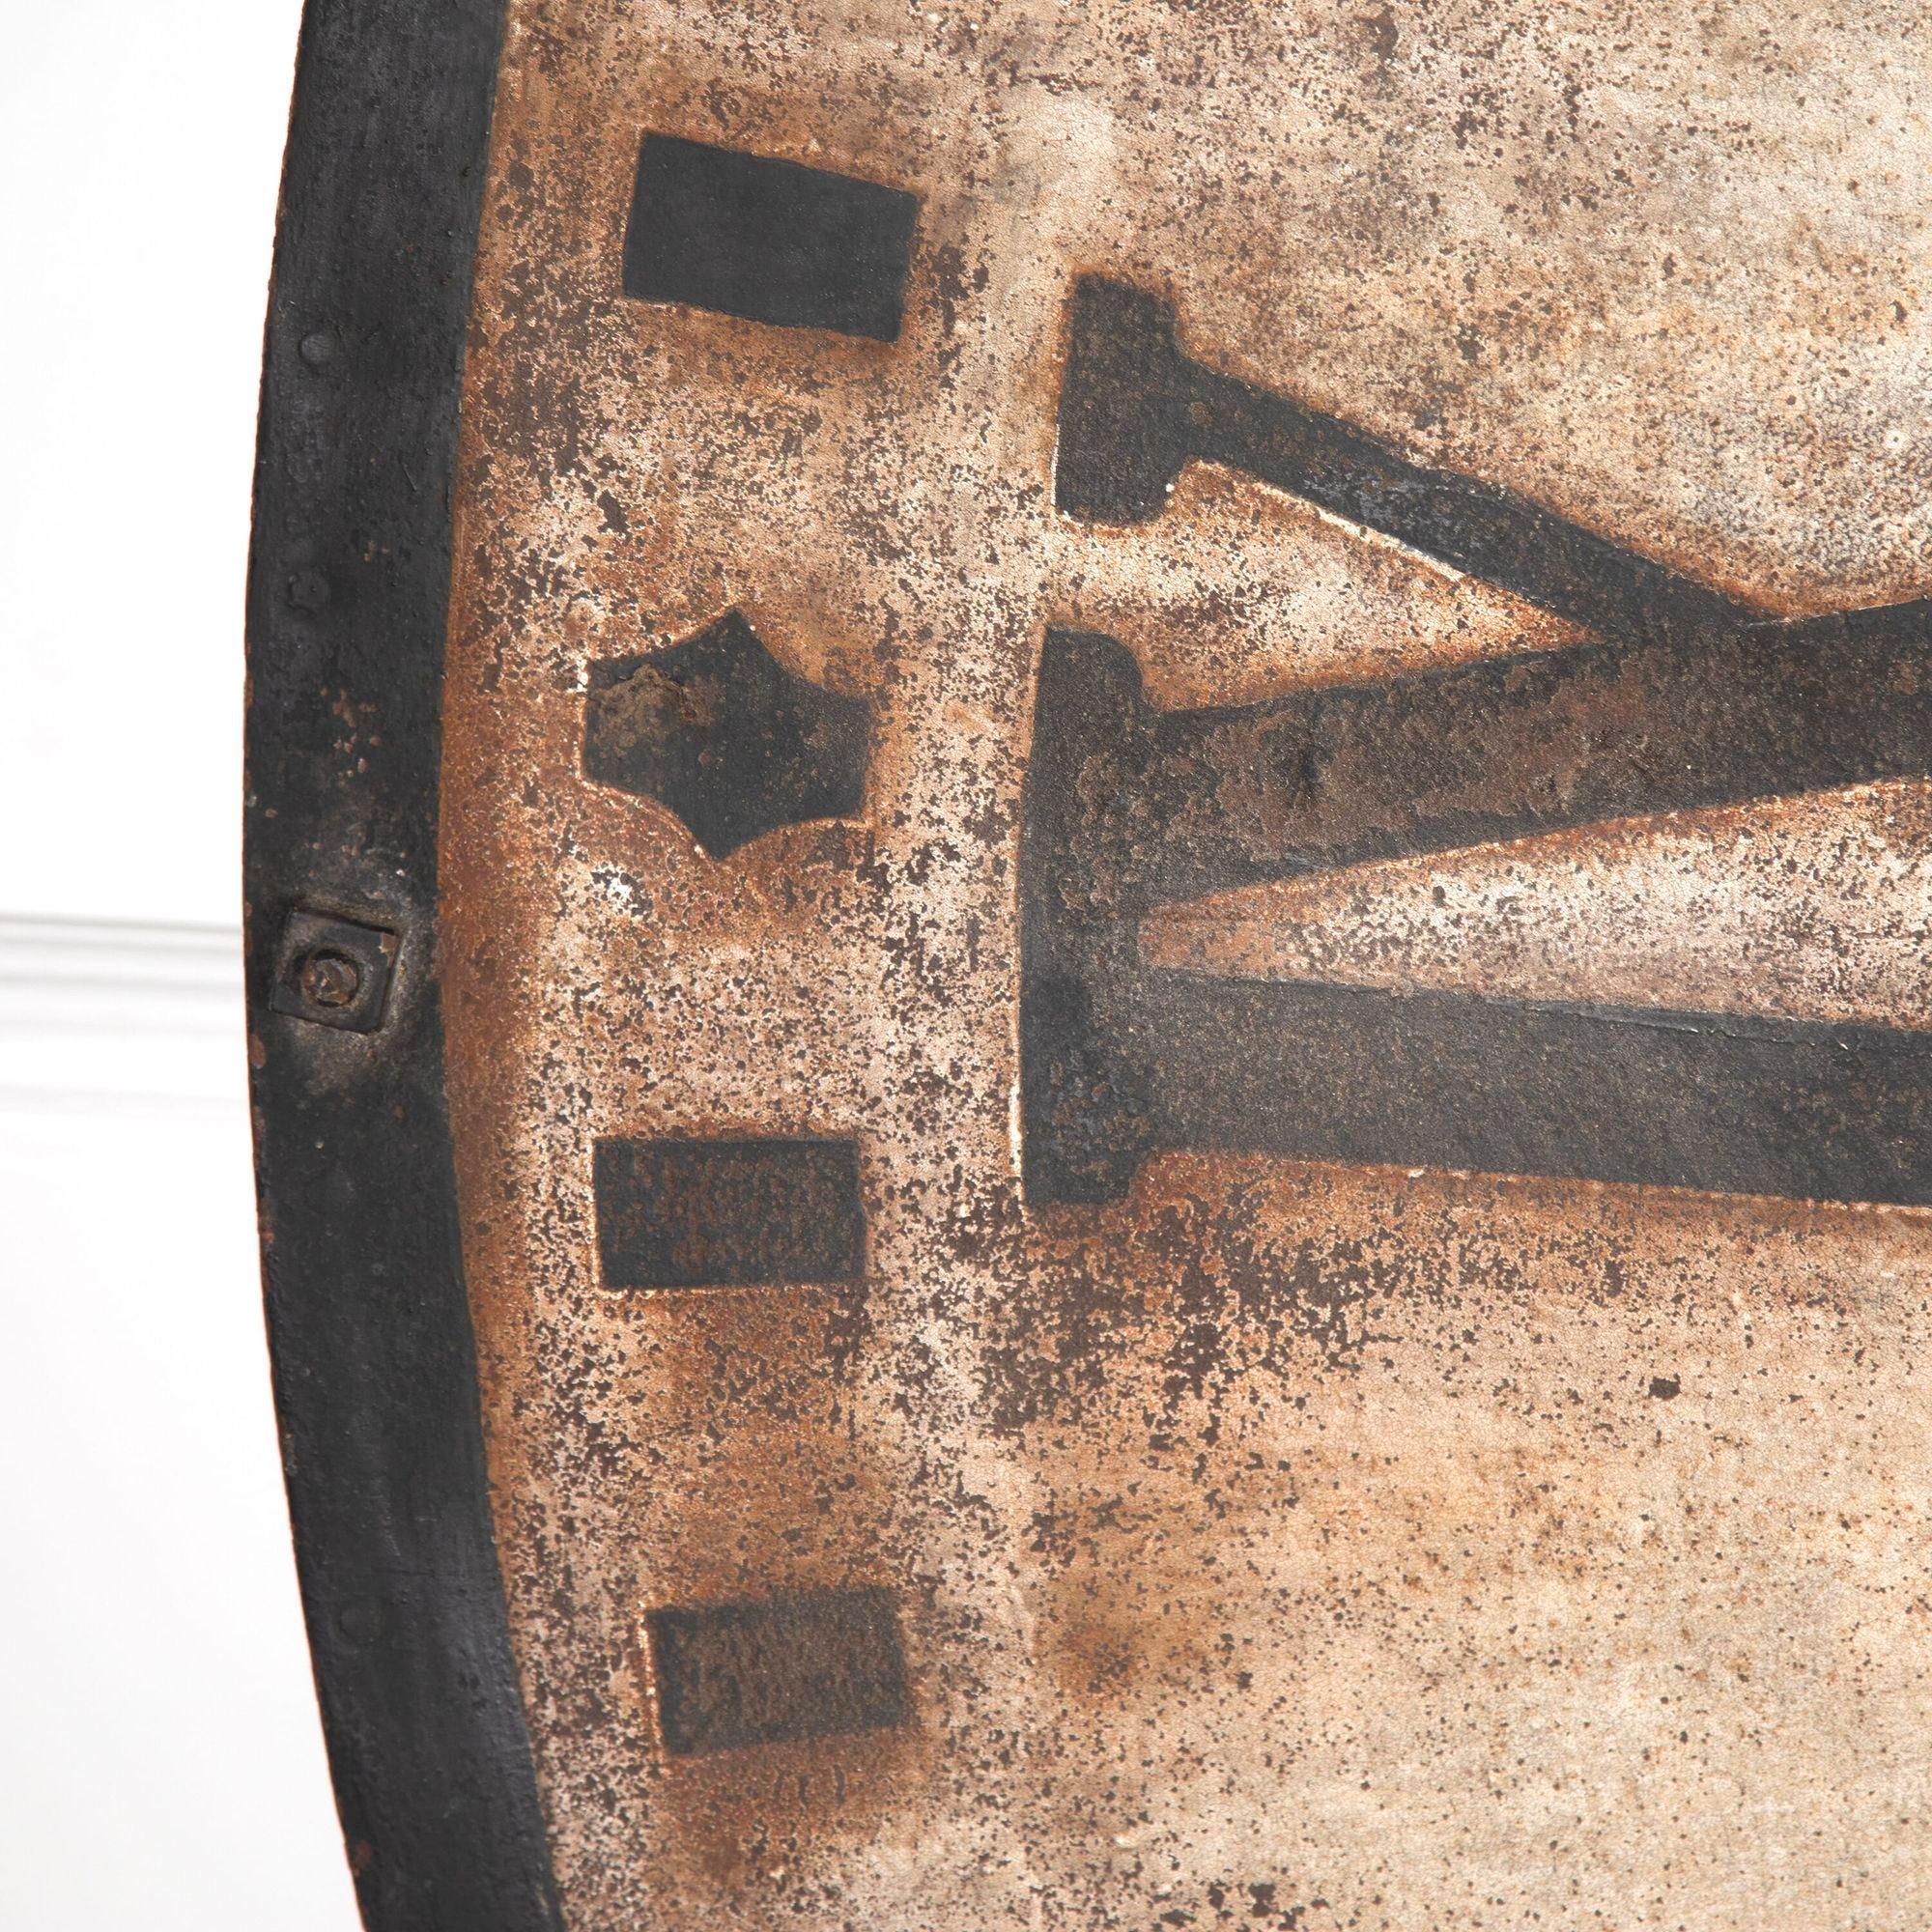 Superbe cadran d'horloge de grande tour du 19ème siècle provenant de France.
Avec visage et mains en métal peint d'origine. La peinture a été usée pendant des années, ce qui lui donne une belle apparence.
Il a encore une partie du mécanisme